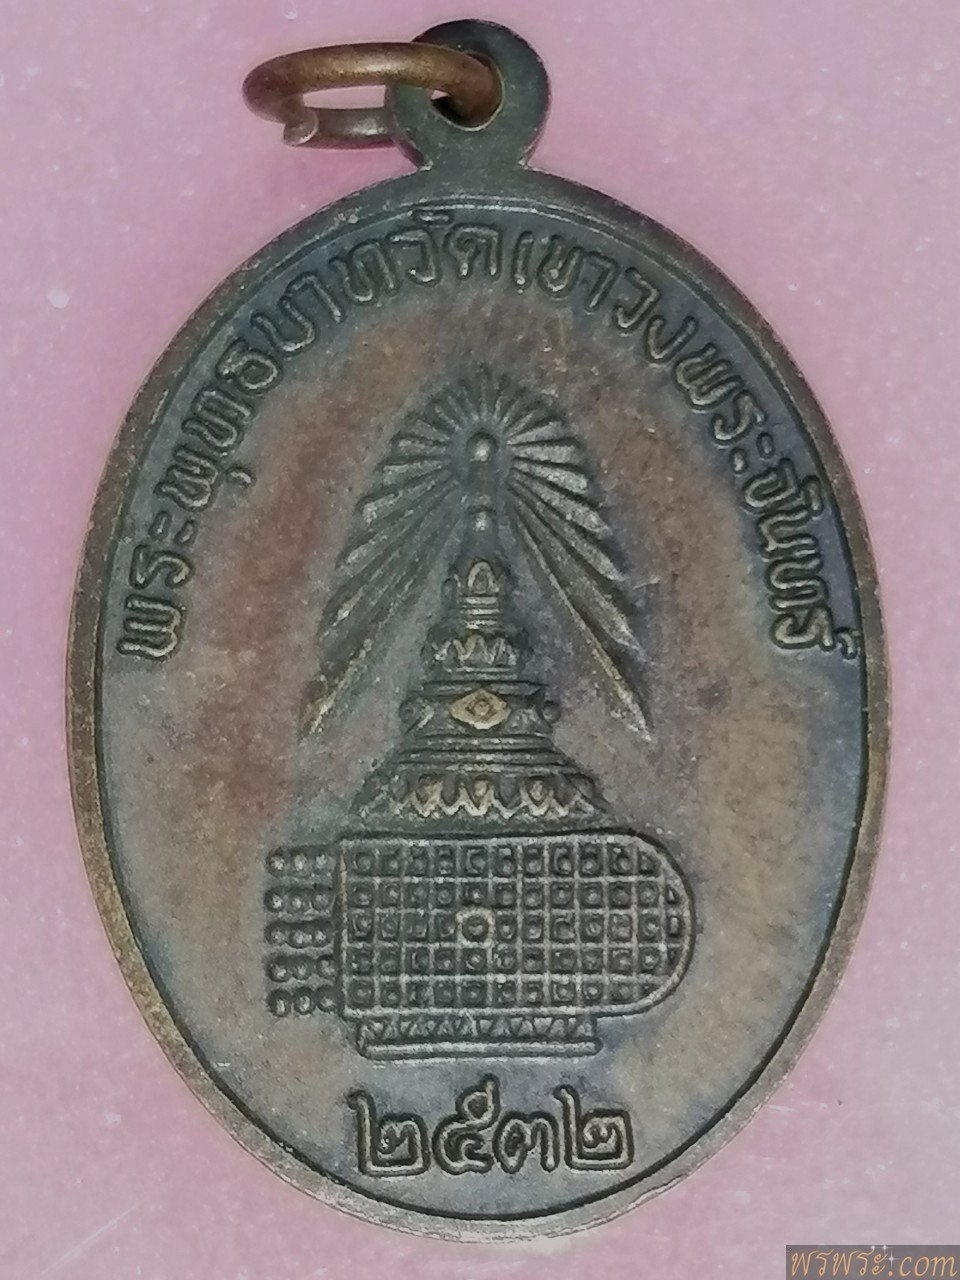 เหรียญ​ เจ้าแม่​กวนอิม​ วัดพระพุทธบาท​เขาวงพระจันทร์​ ๒๕๓๒